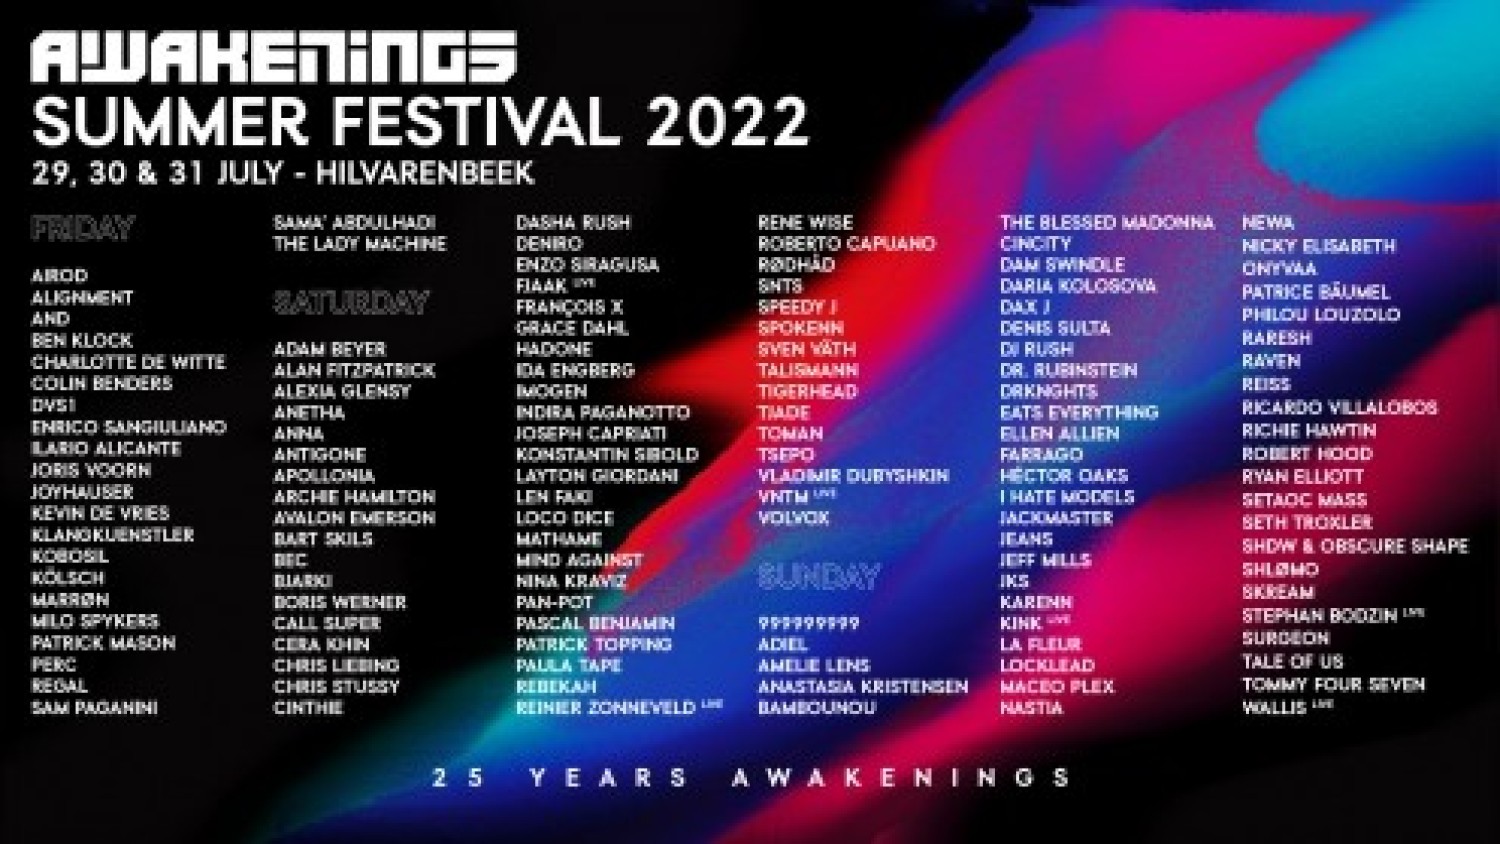 Awakenings Summer Festival 2022